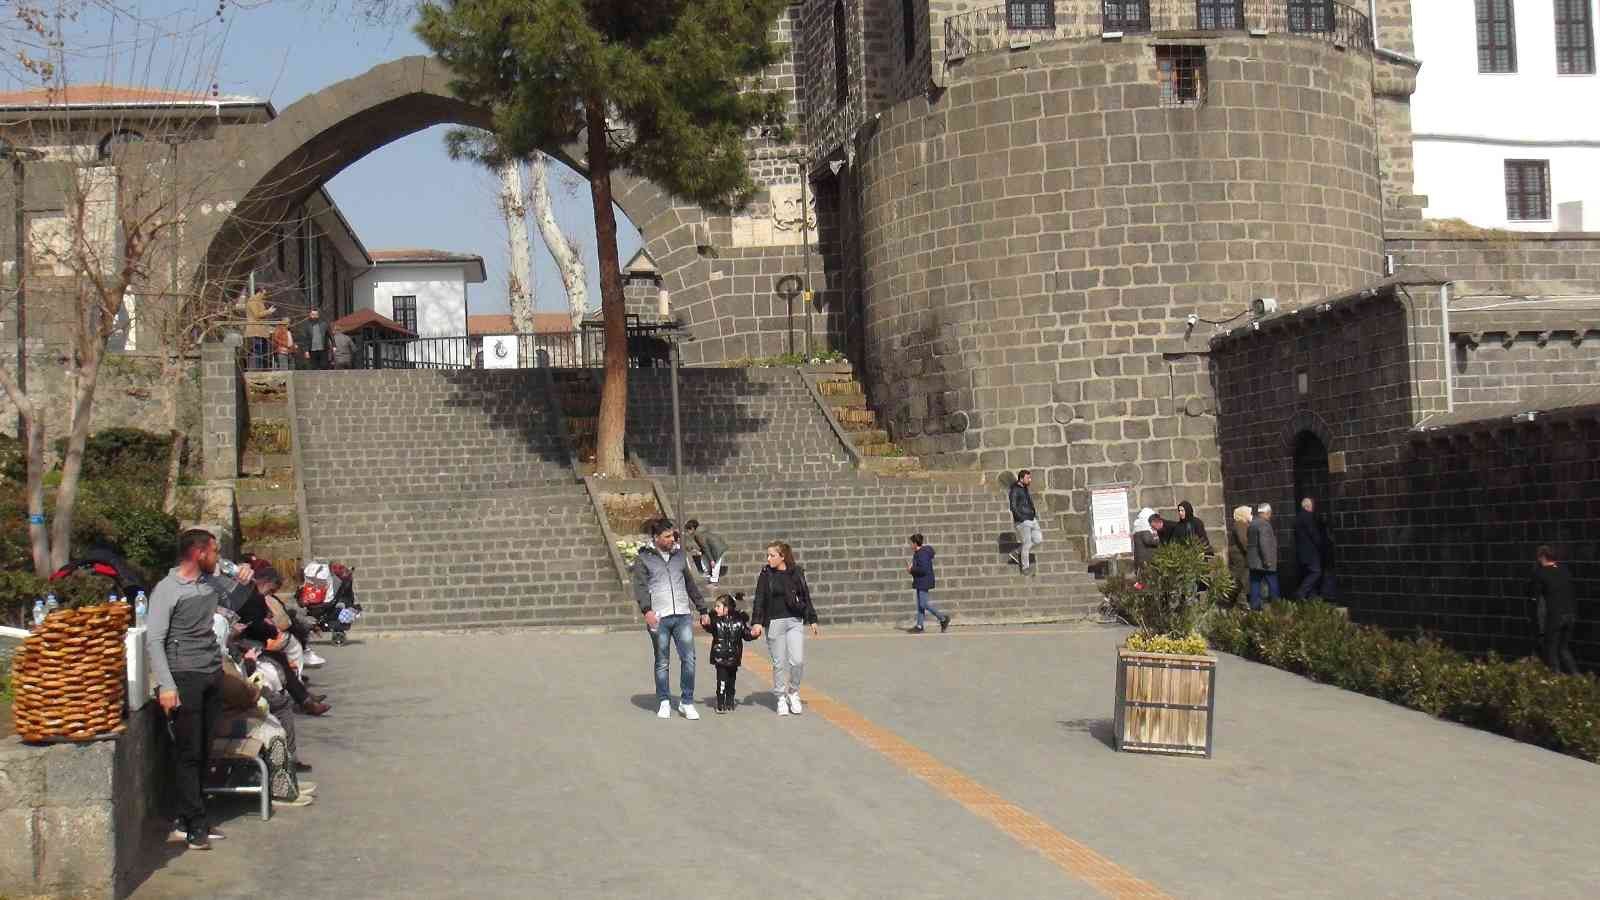 Diyarbakır’da güneşli havayı fırsat bilen vatandaşlar tarihi yerlere akın etti #diyarbakir